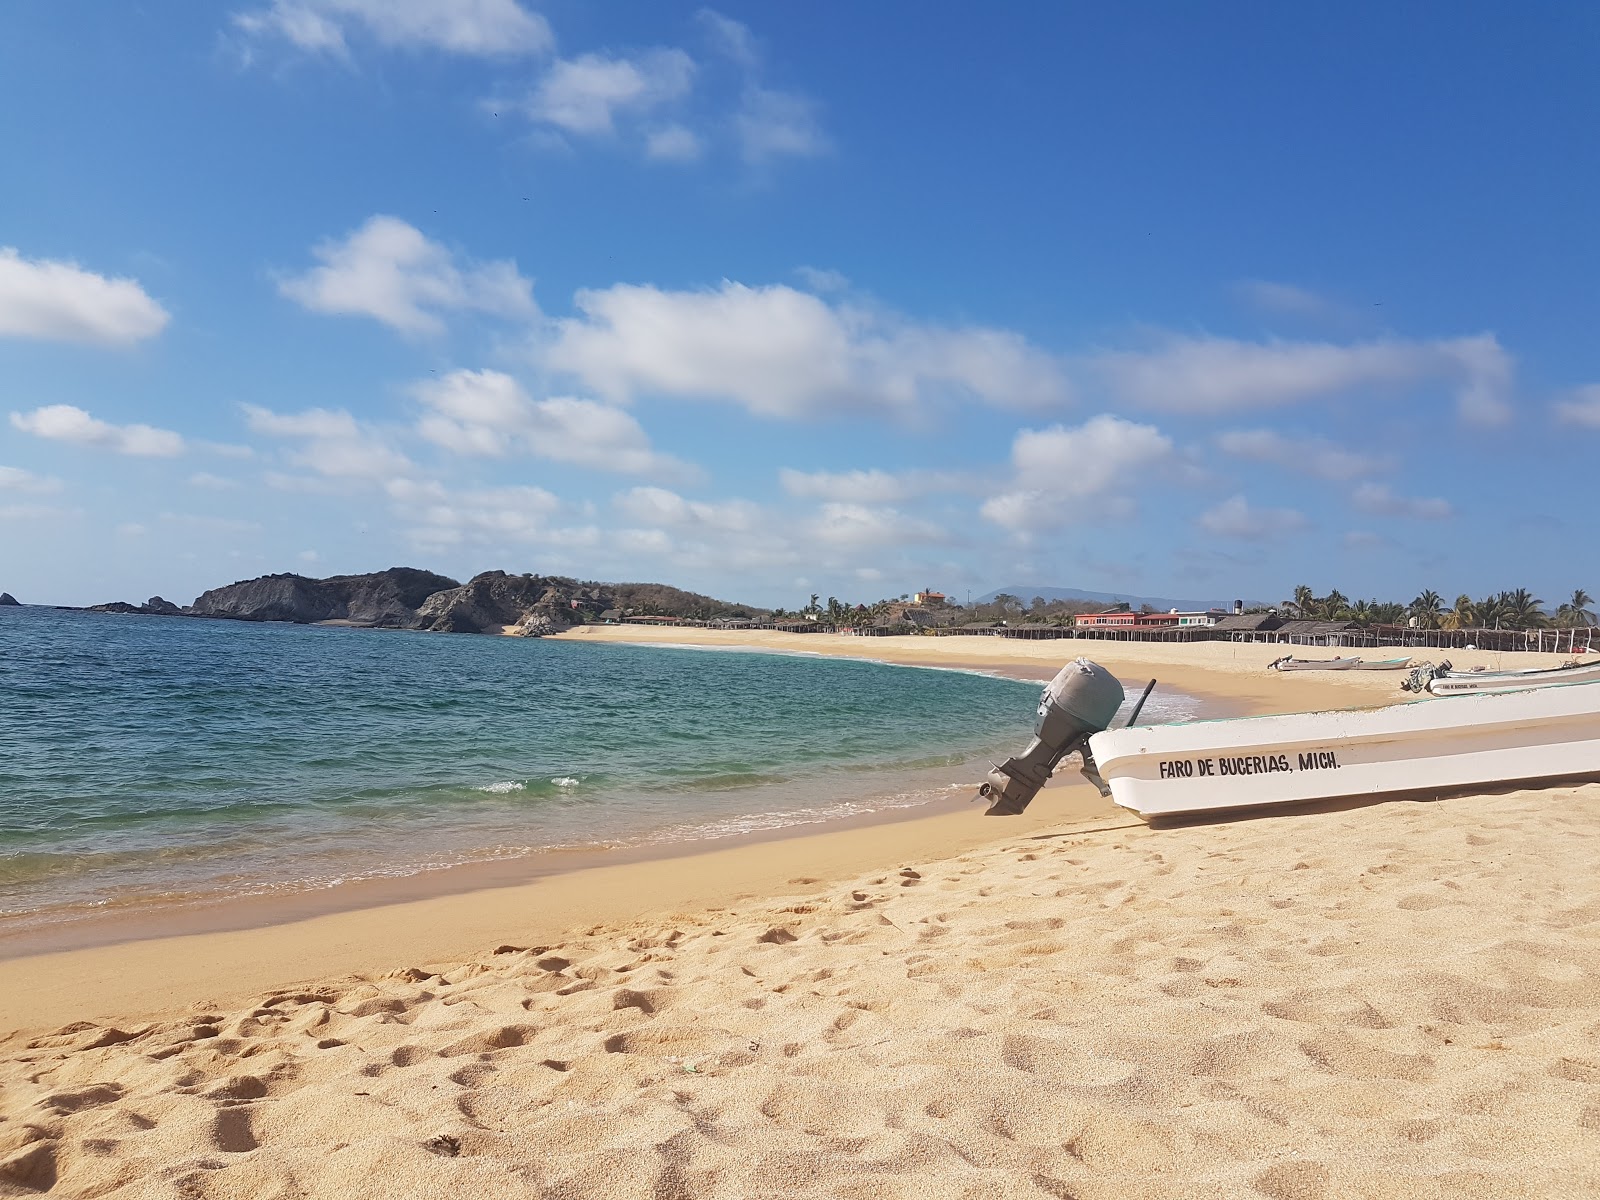 Zdjęcie Playa el Faro - popularne miejsce wśród znawców relaksu